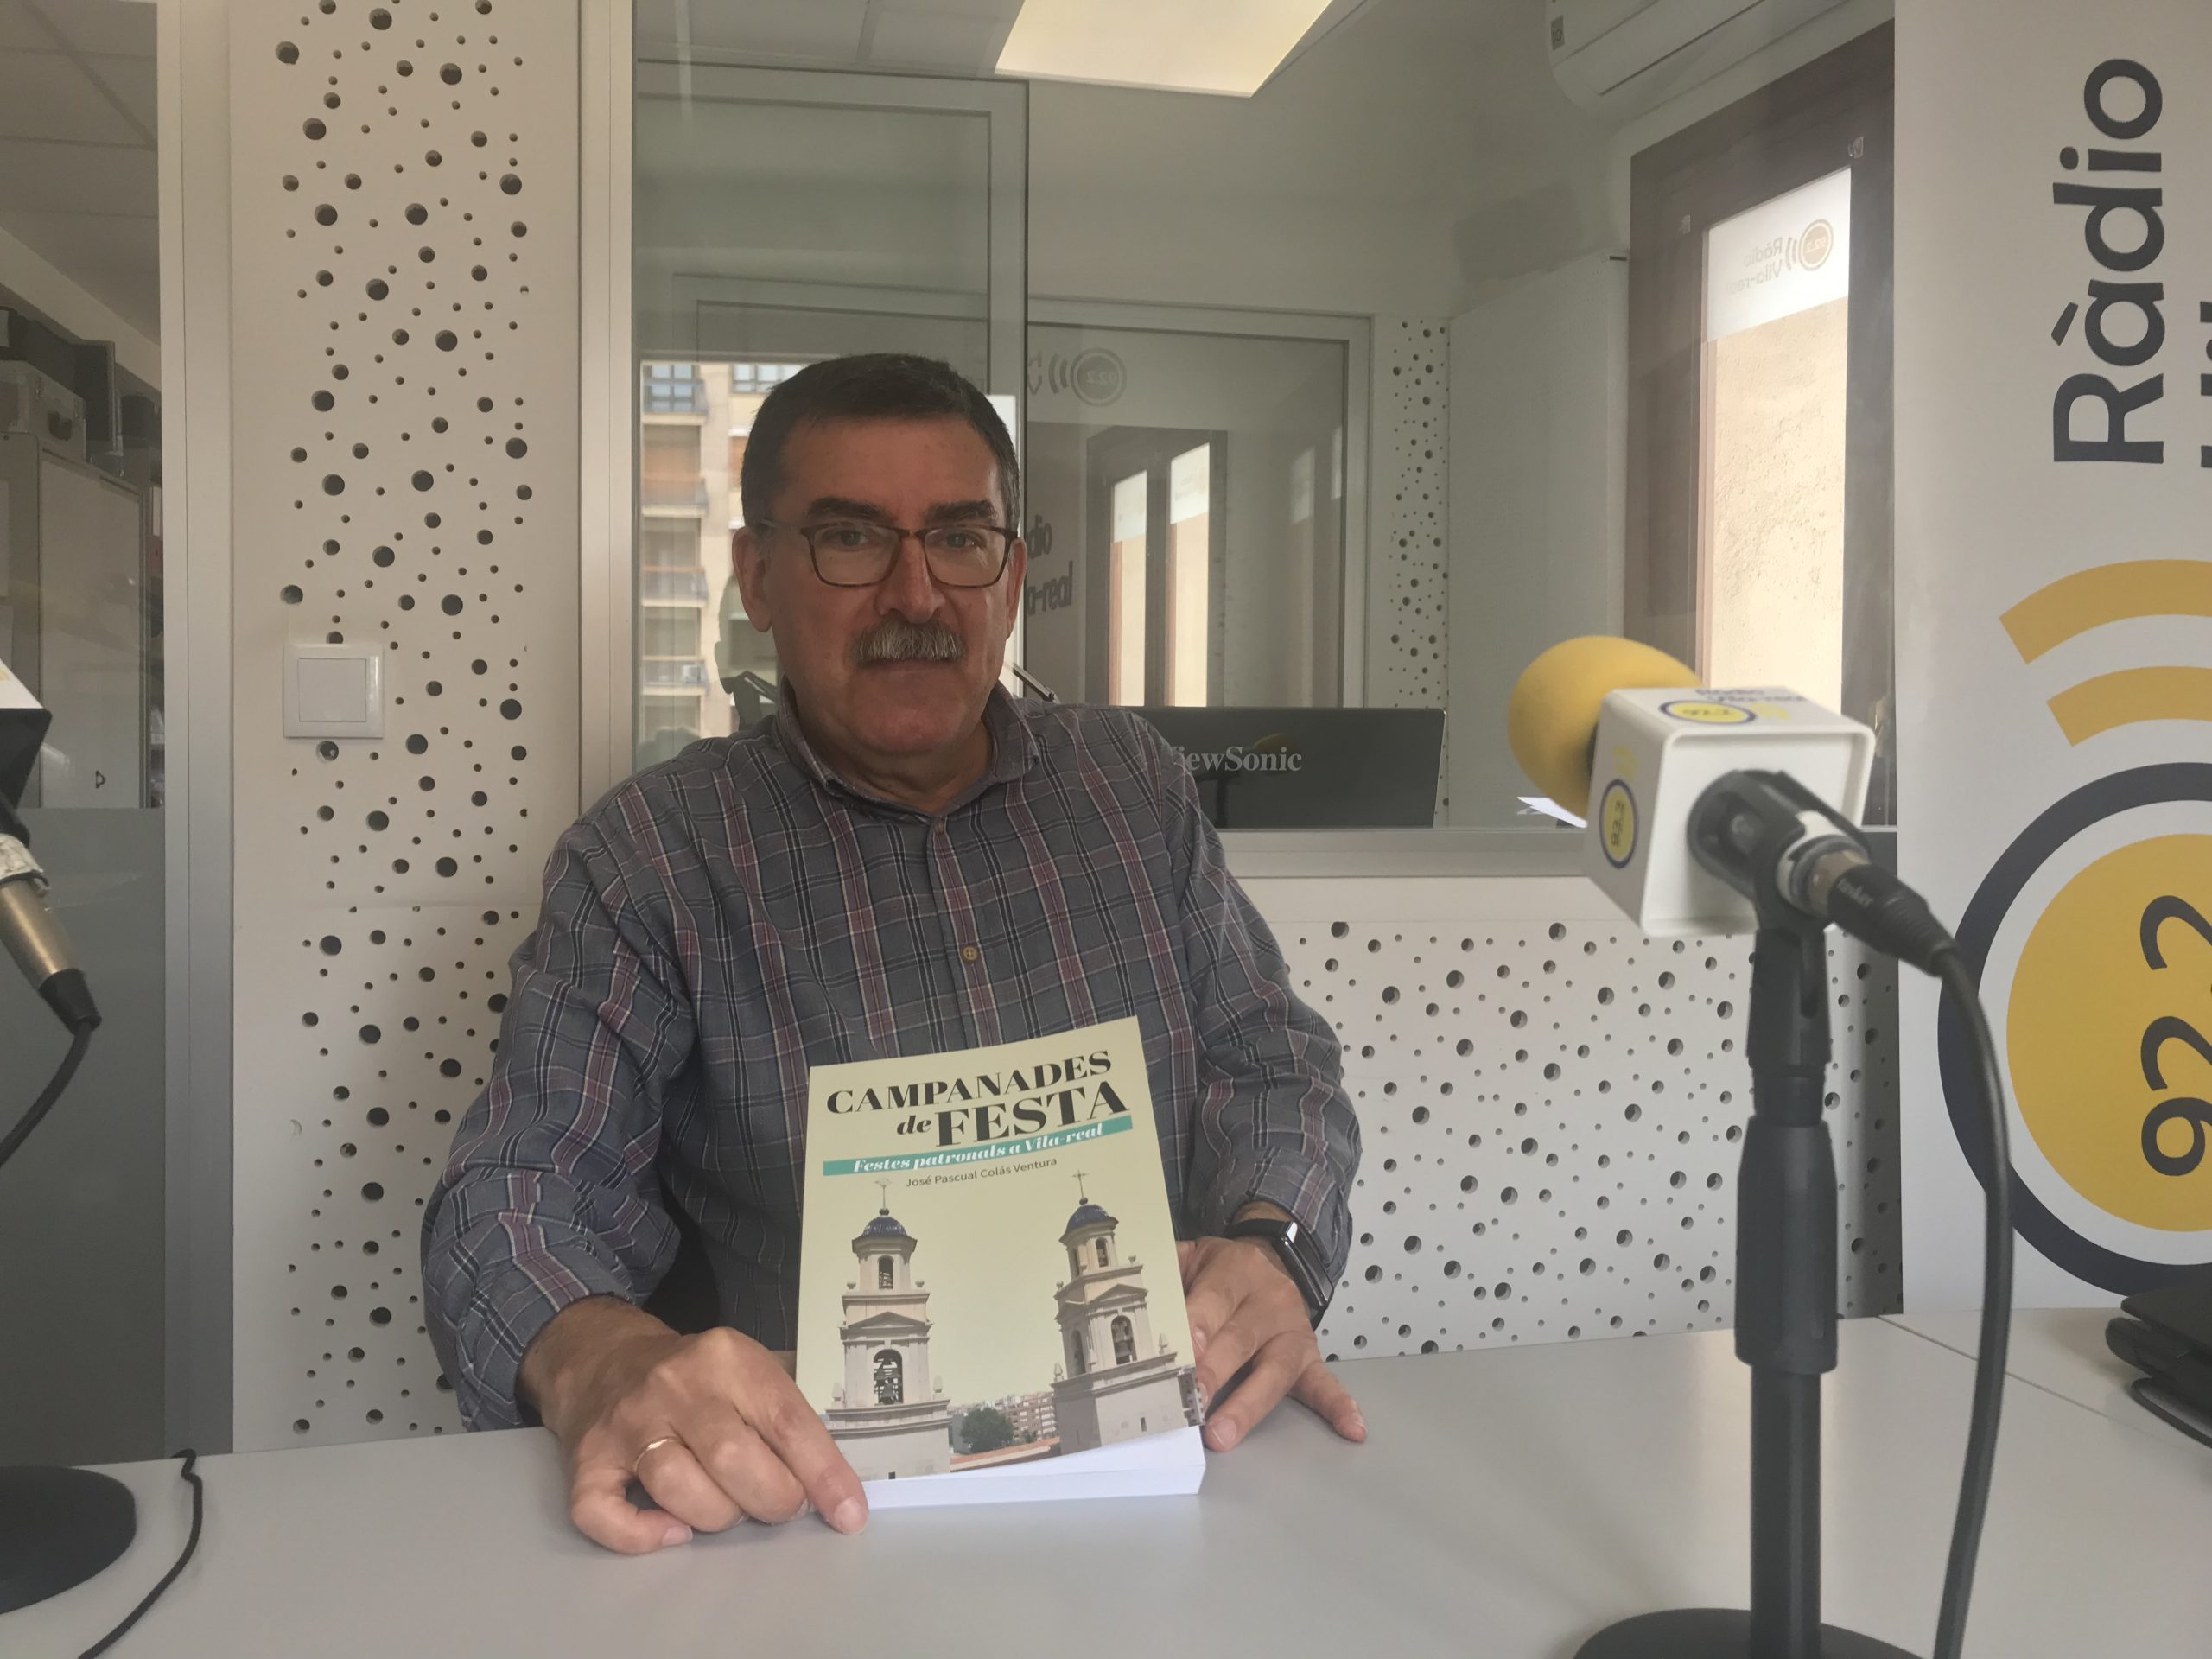 Entrevista a José Pascual Colás, ens presenta «Campanades de festa»